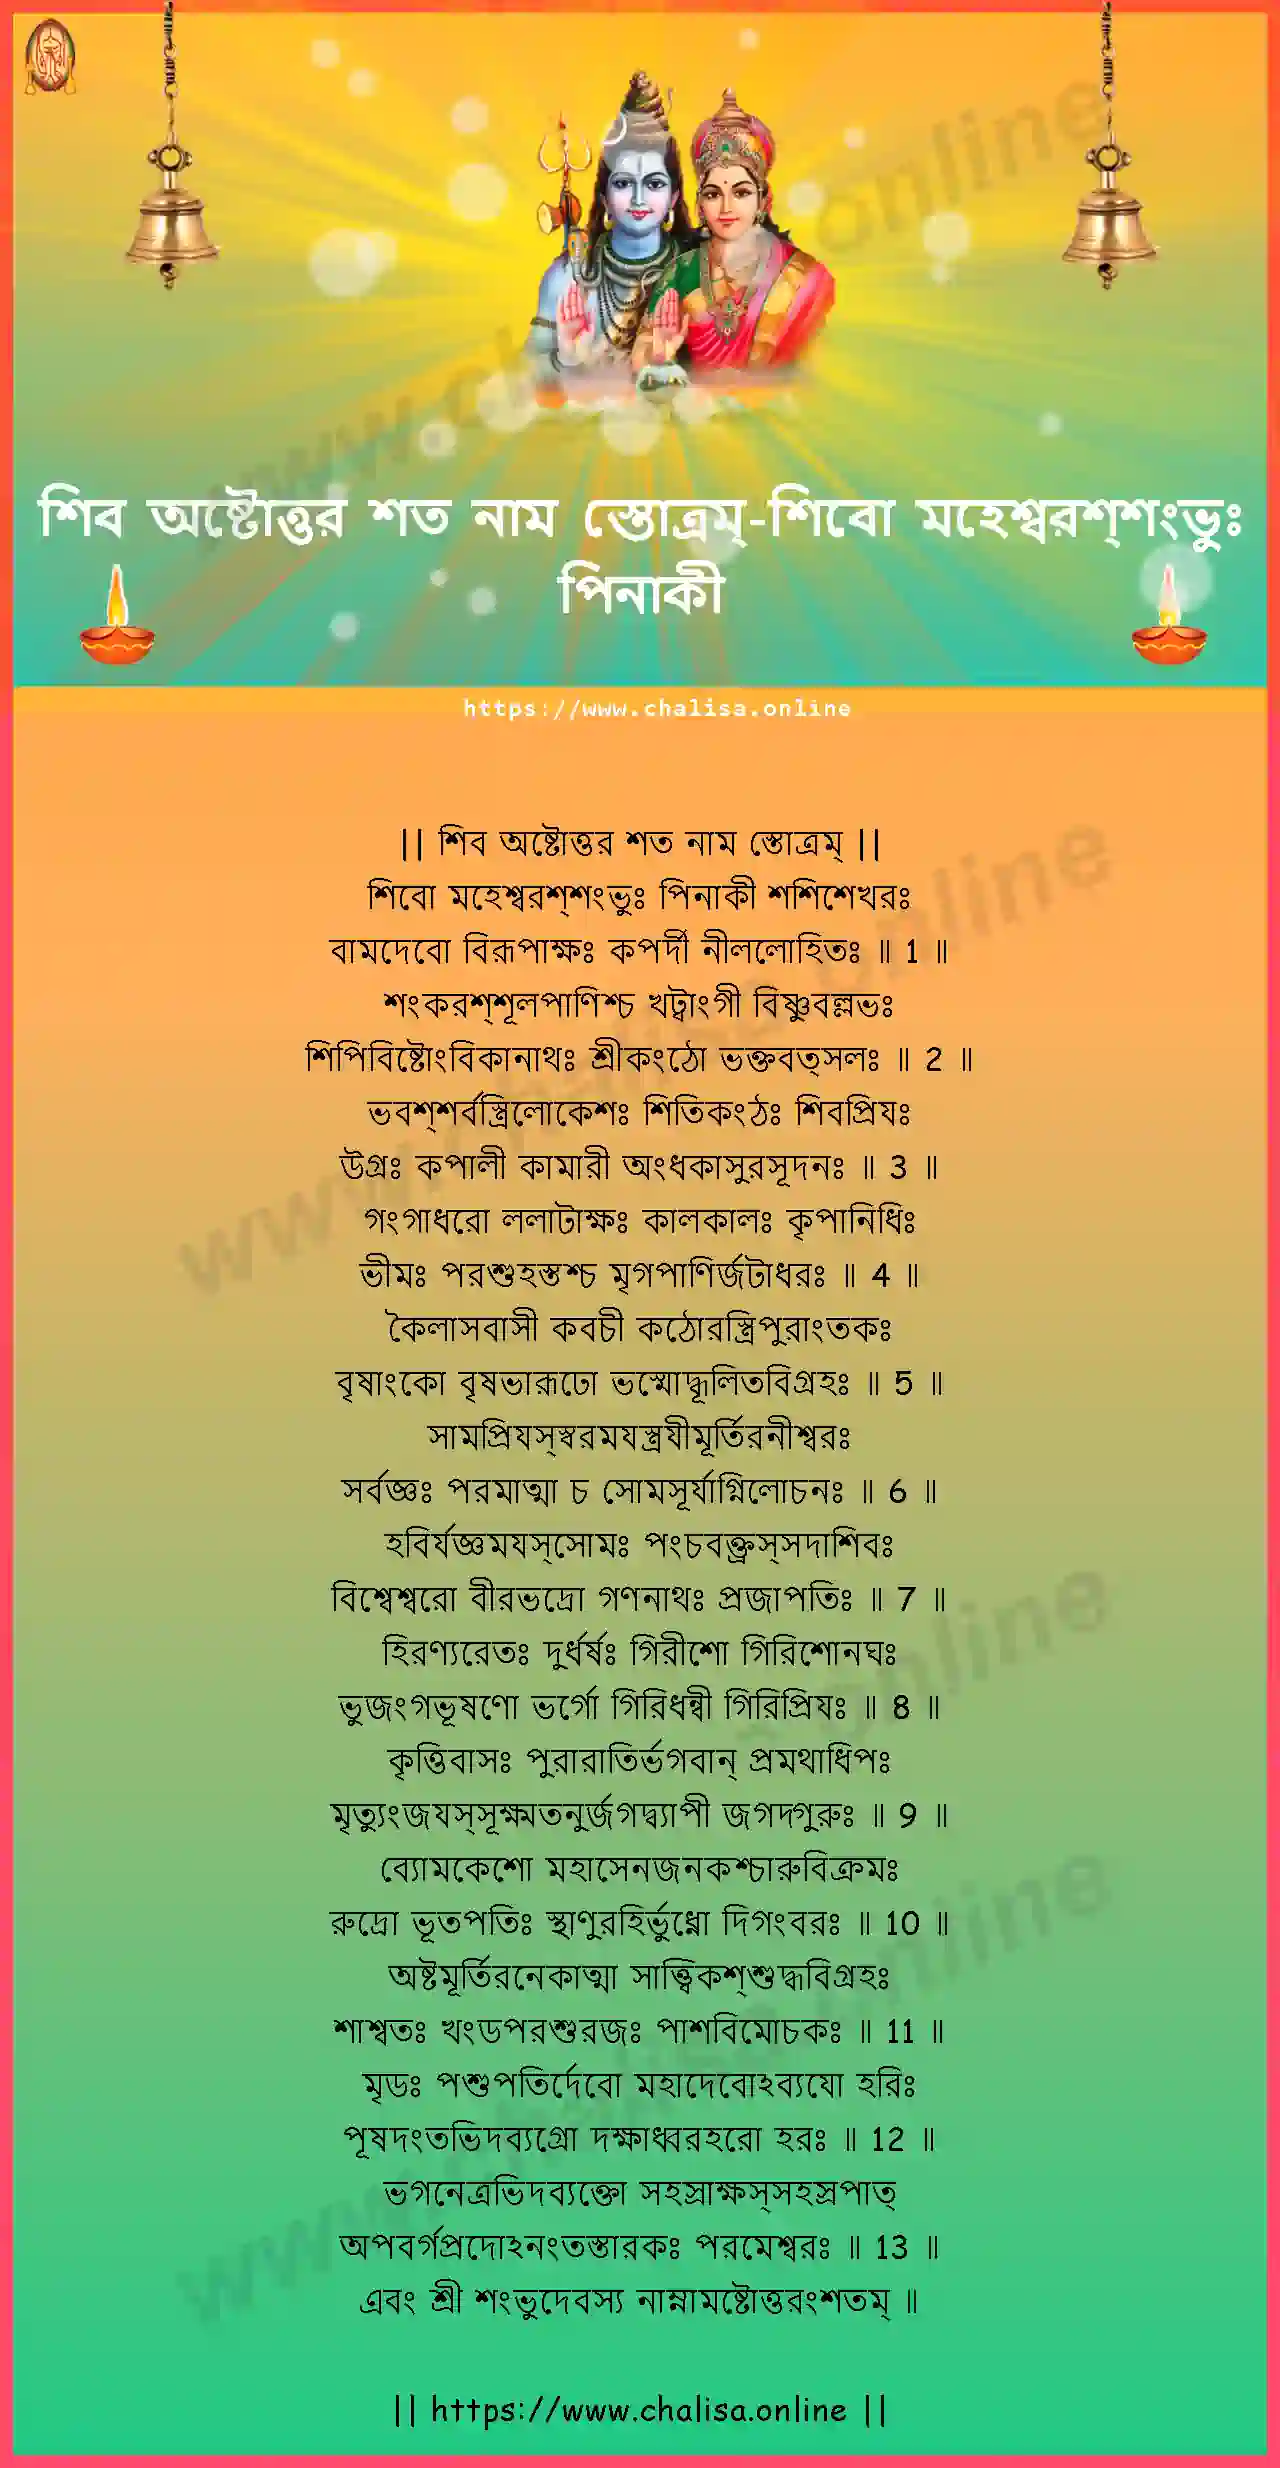 sivo-mahesvarassambhuh-shiva-ashtottara-sata-nama-stotram-bengali-bengali-lyrics-download